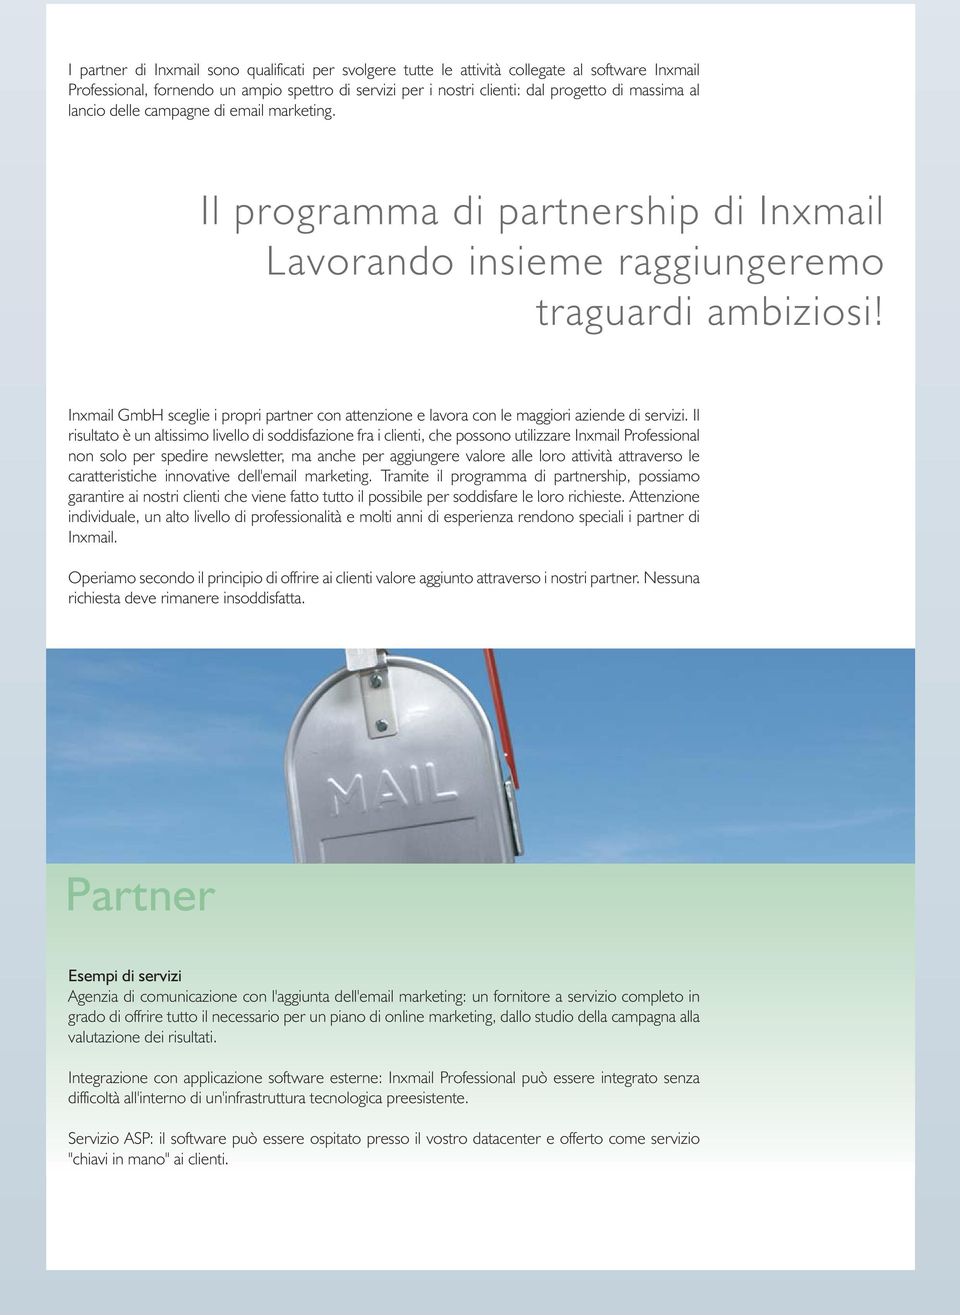 Inxmail GmbH sceglie i propri partner con attenzione e lavora con le maggiori aziende di servizi.